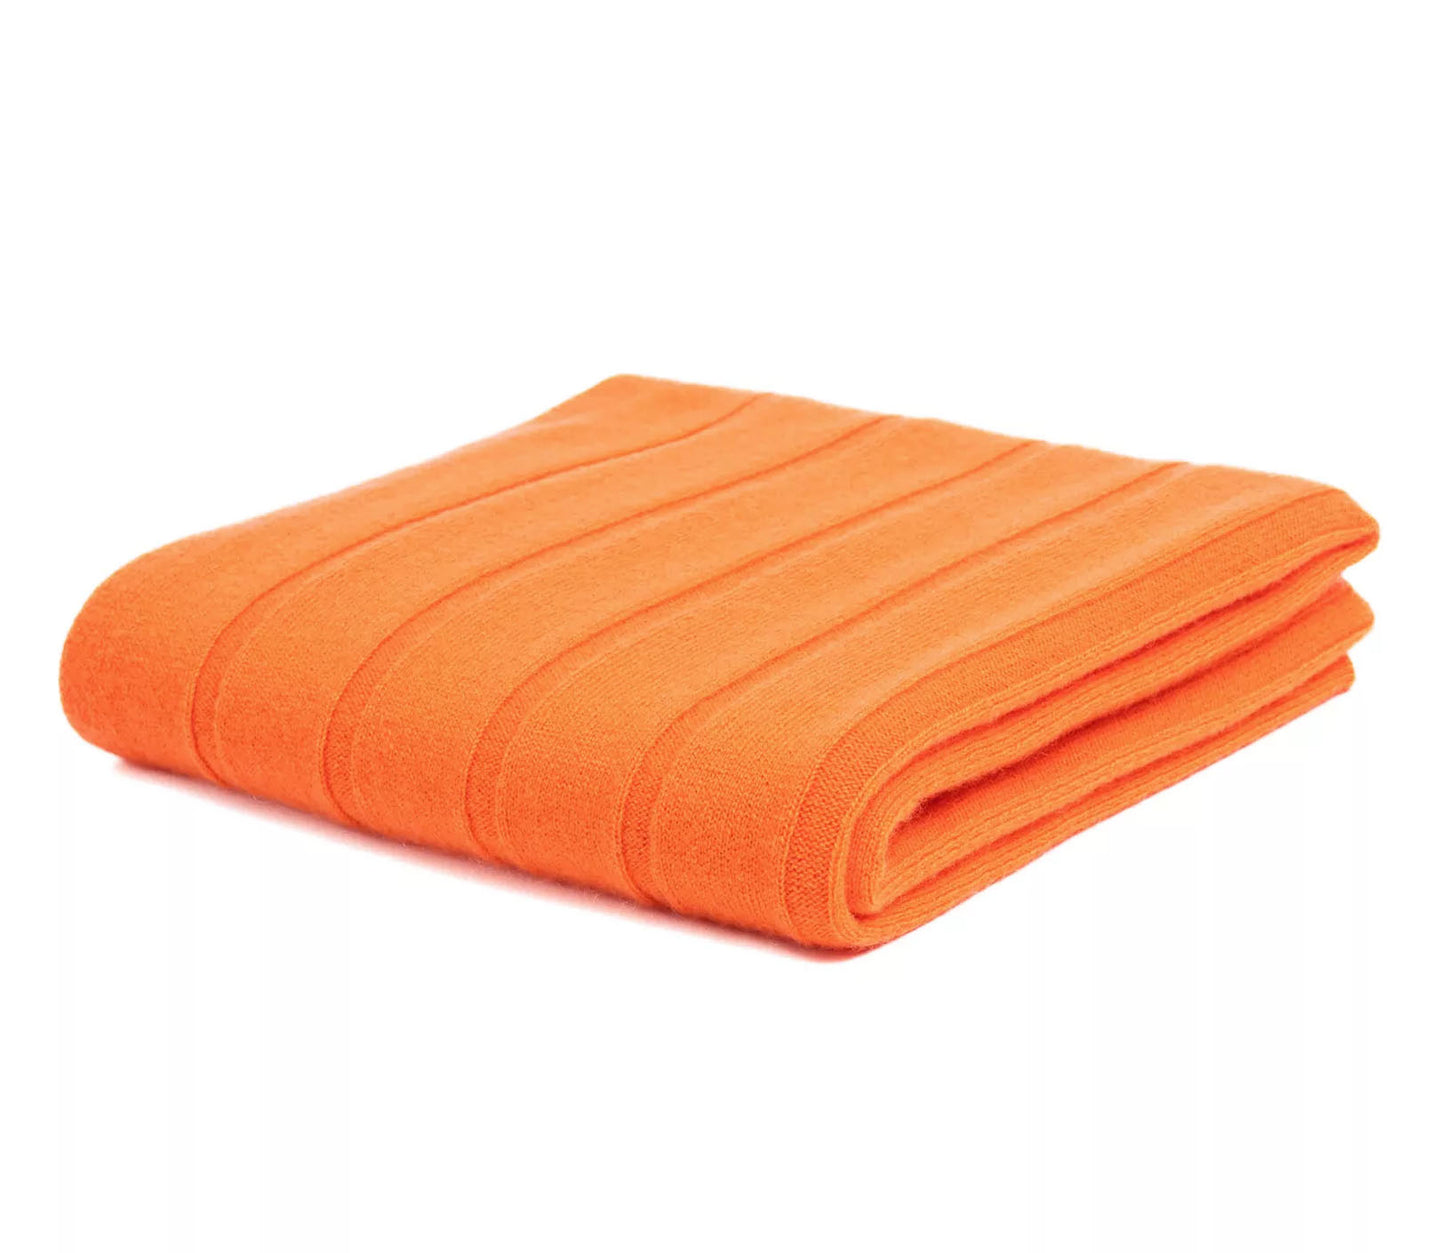 Cashmere Schals der Extra Klasse - Modell MARRAKECH - Orange, Hellgrau